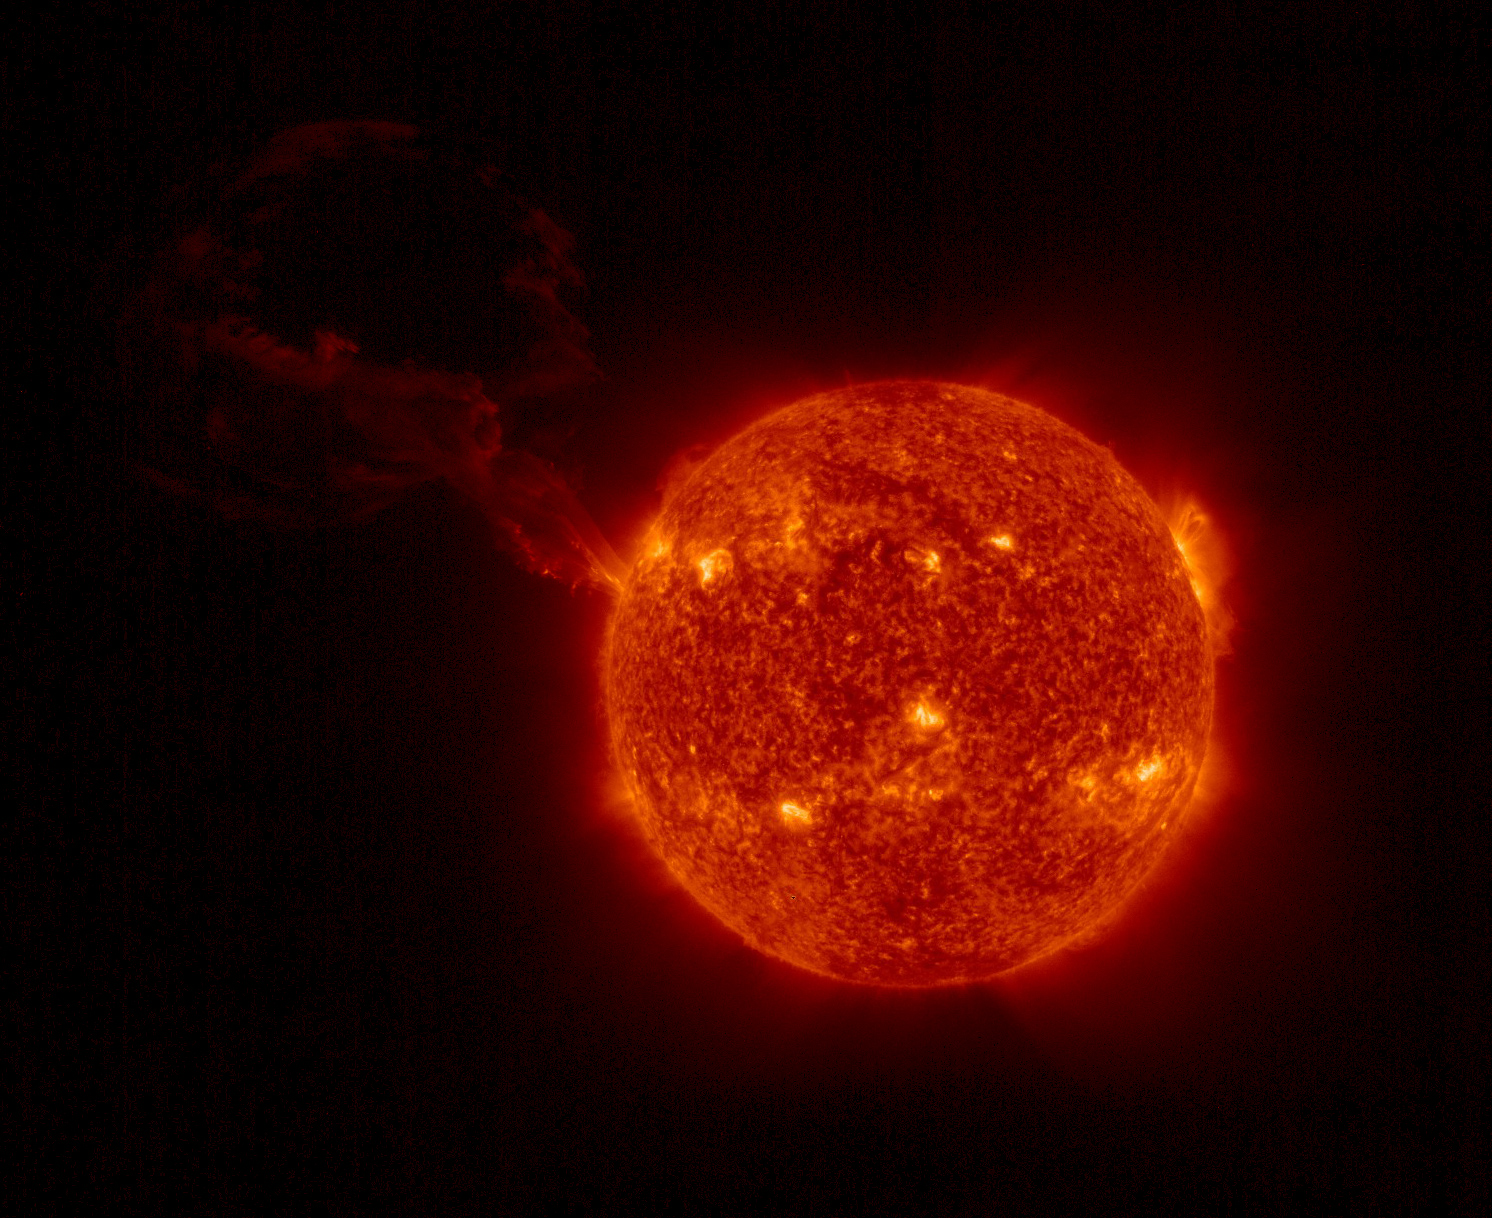 Bámulatos fotót küldött a Solar Orbiter űrszonda a Nap felszínén eddig látott legnagyobb napkitörésről